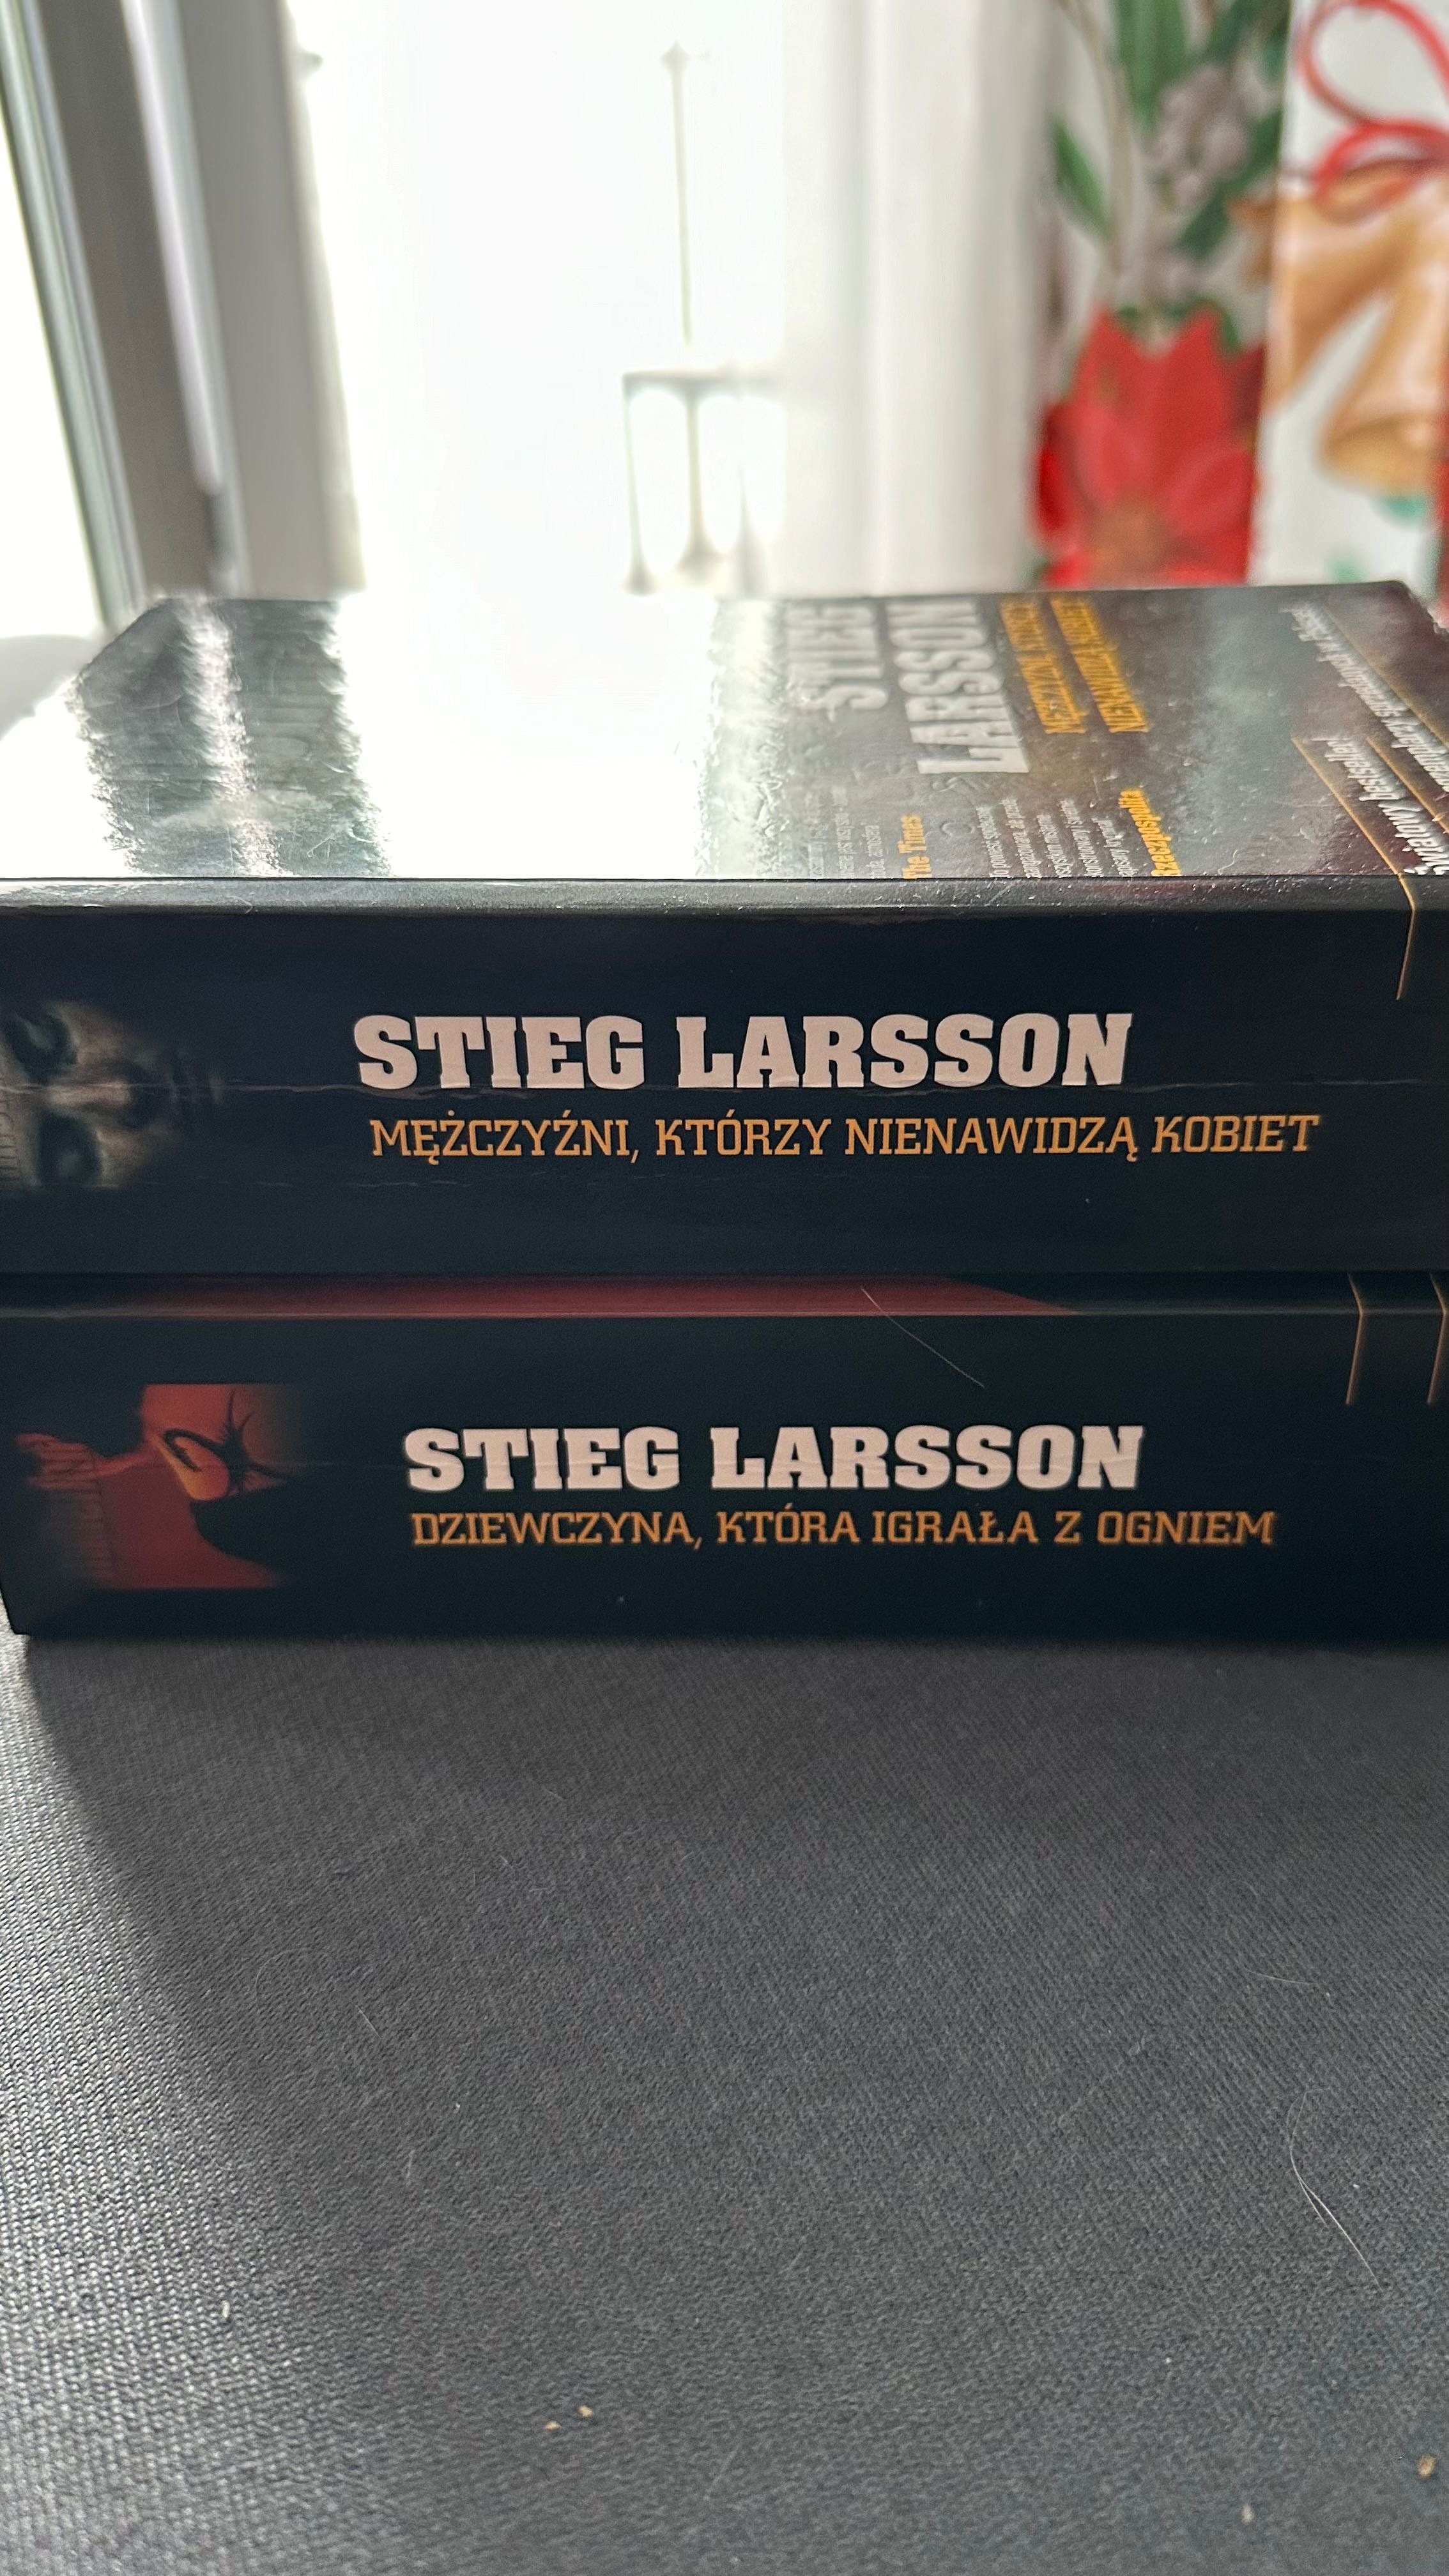 Stieg Larsson, pakiet millenium, 2 tomy, bardzo dobry stan!